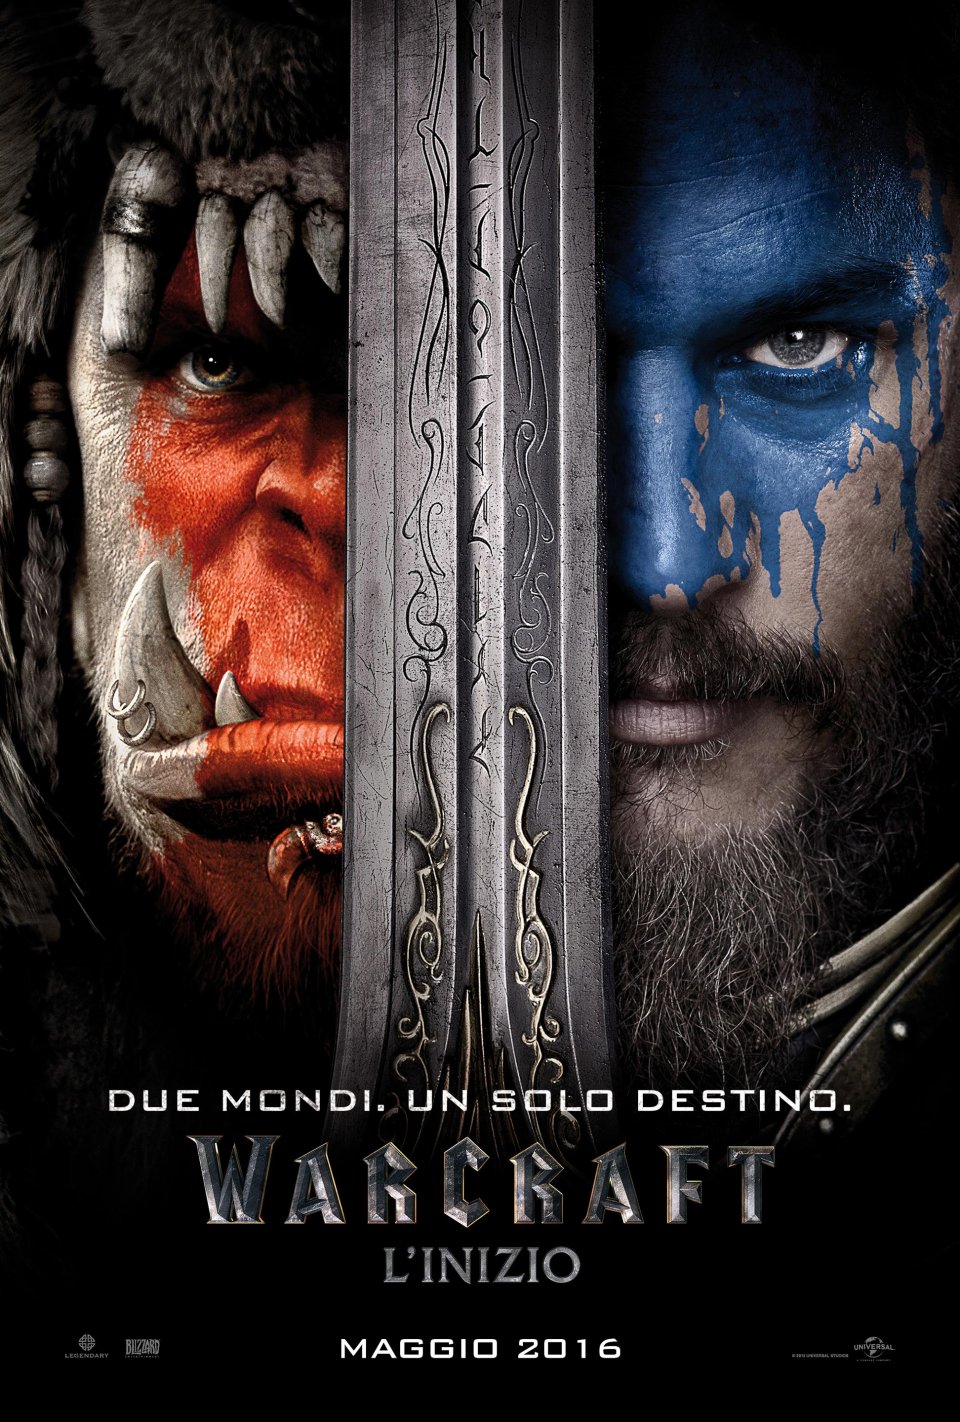 Warcraft: il poster italiano del film